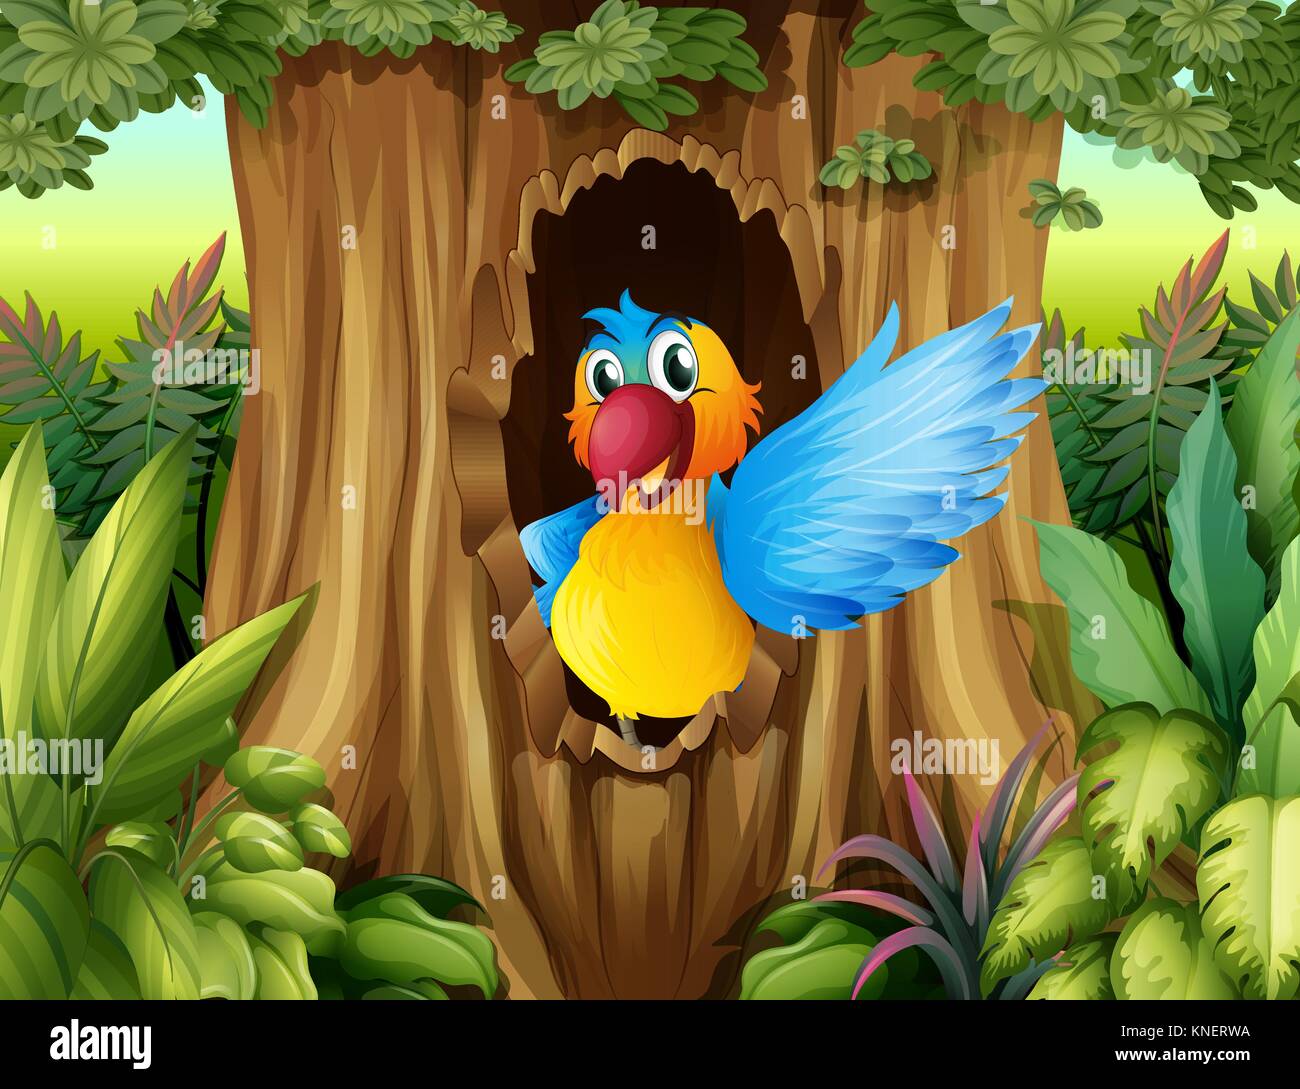 Ilustración de un ave en un árbol hueco Ilustración del Vector